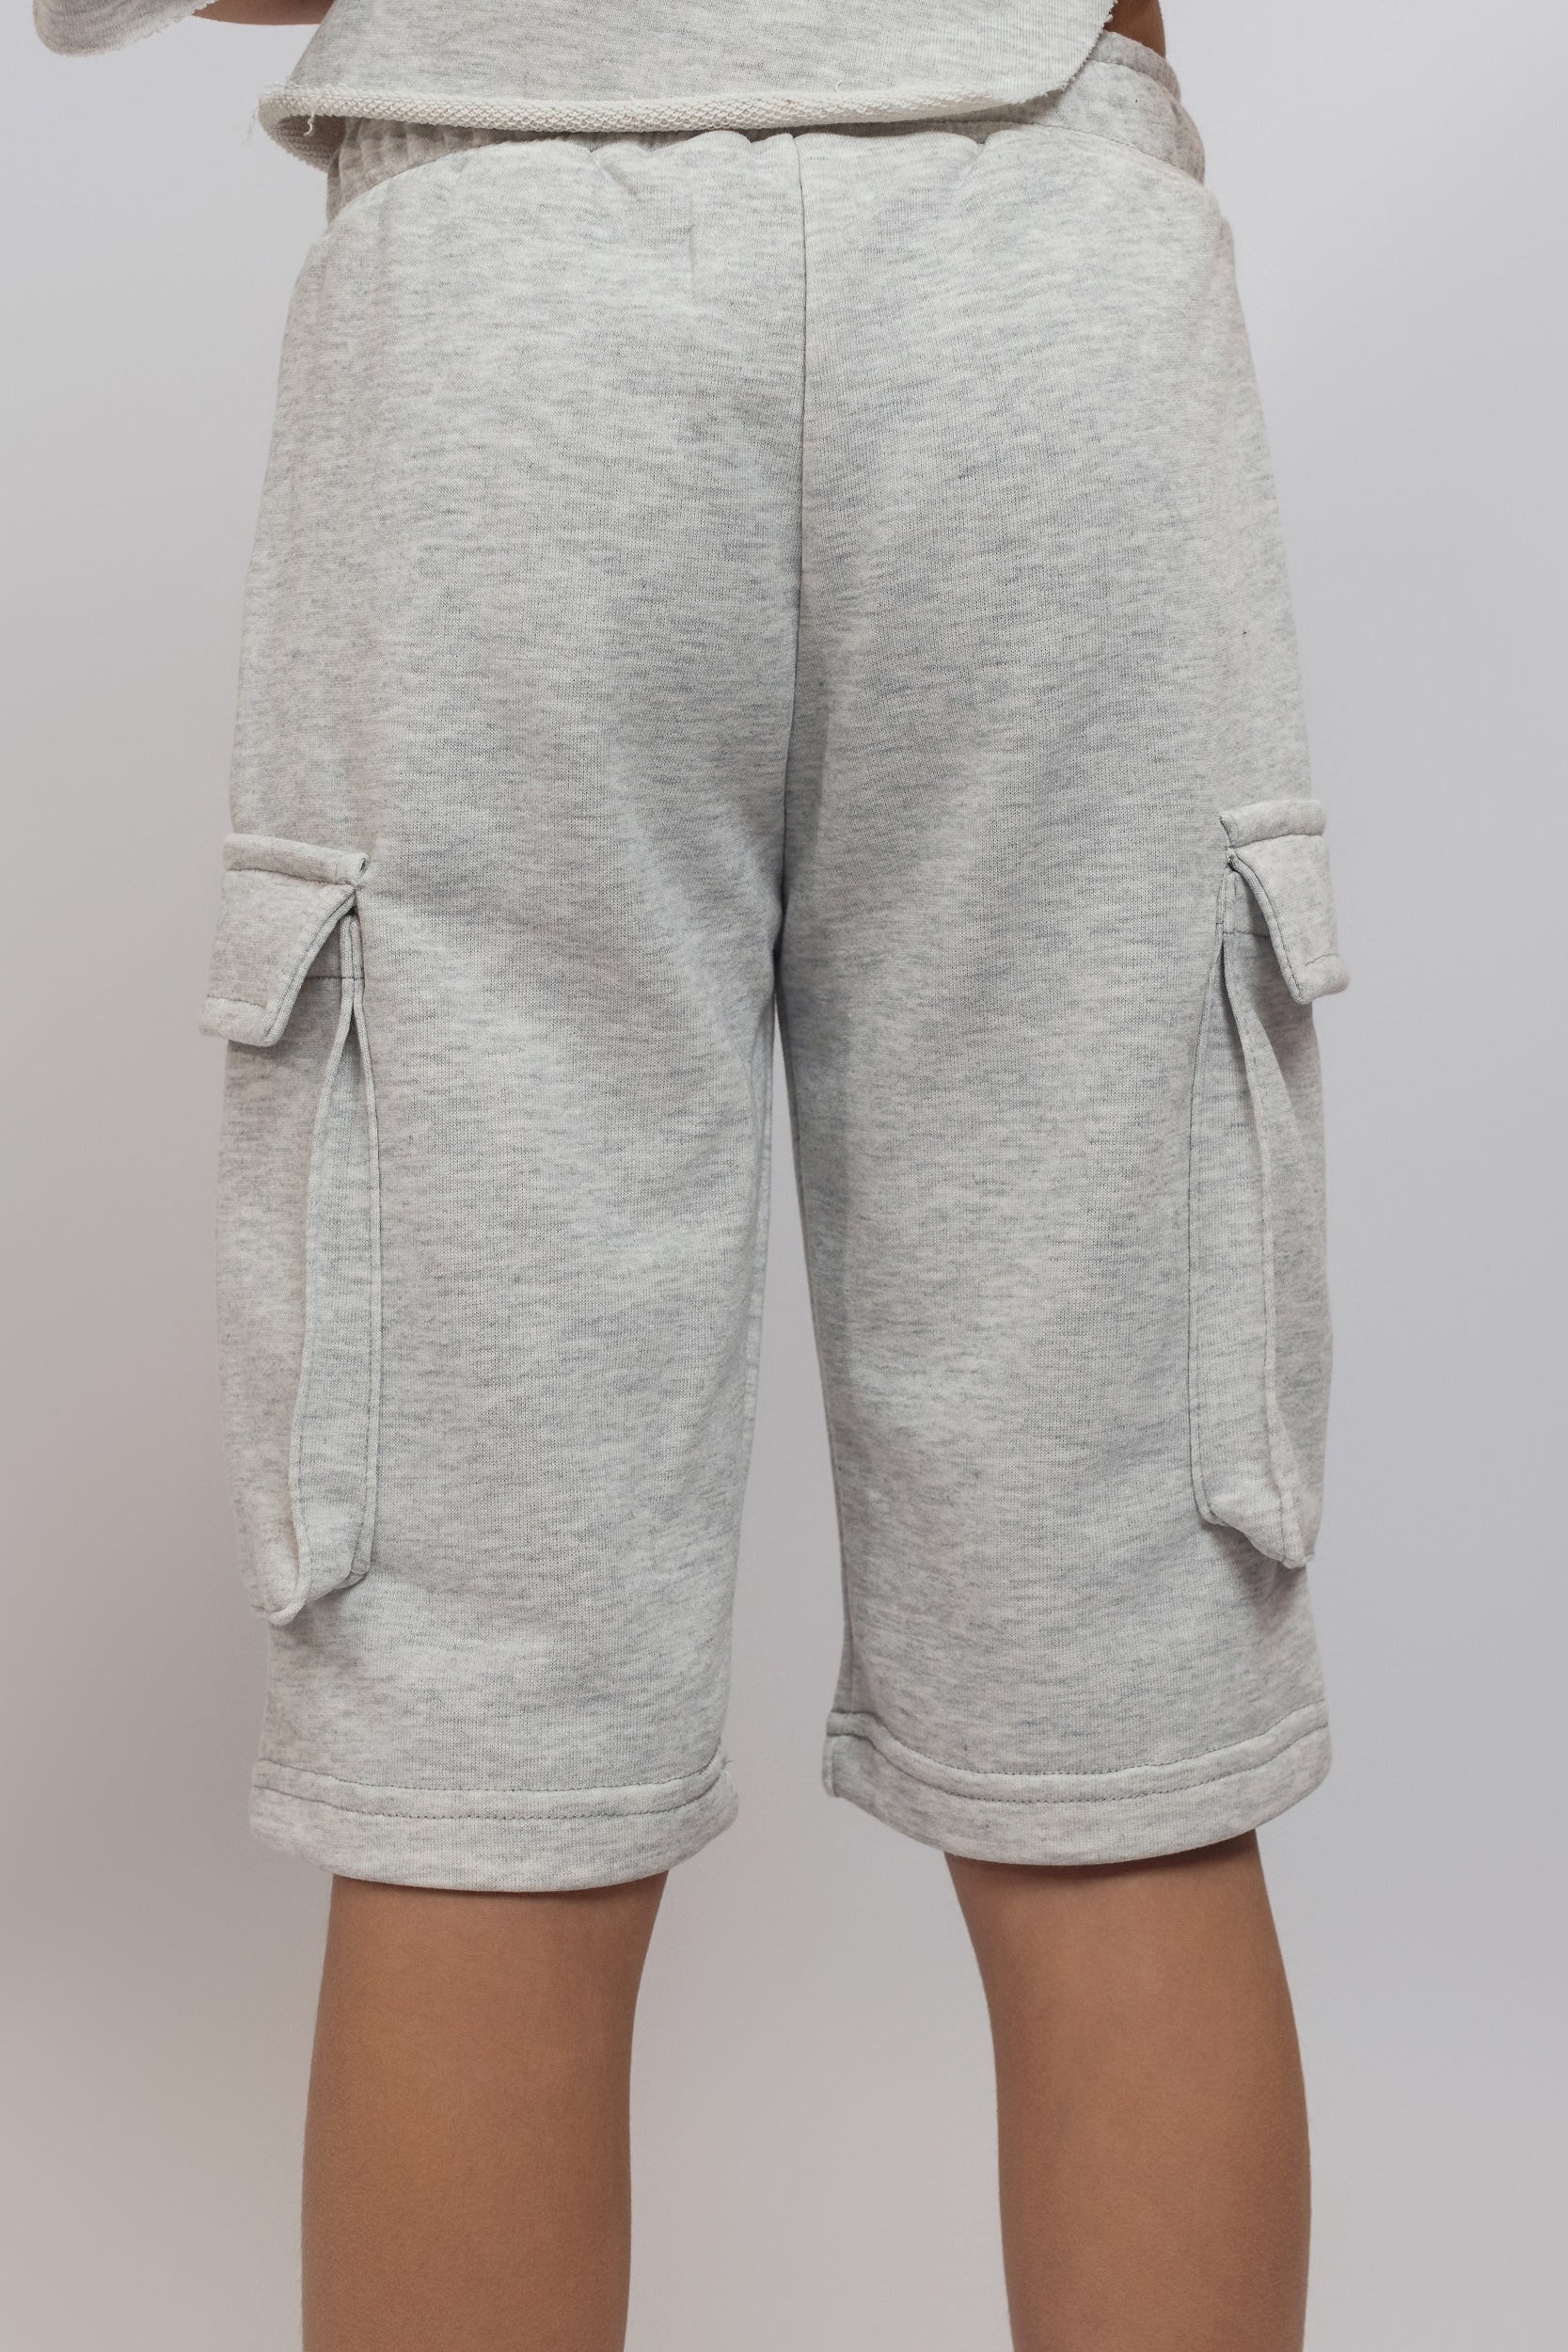 Cargo Shorts For Boys - Grey